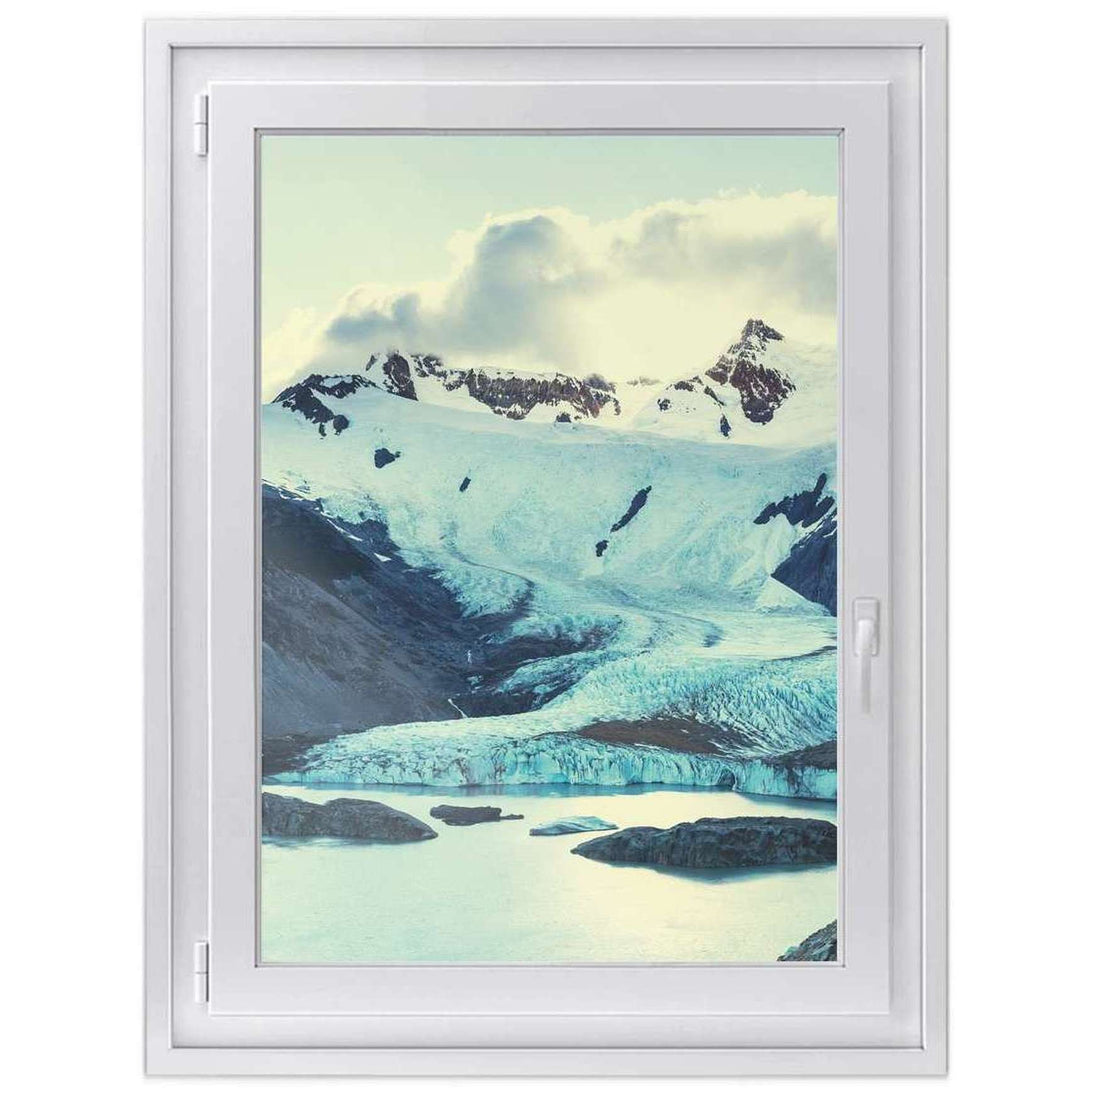 Fensterfolie [hoch] -Patagonia- Größe: 70x100 cm